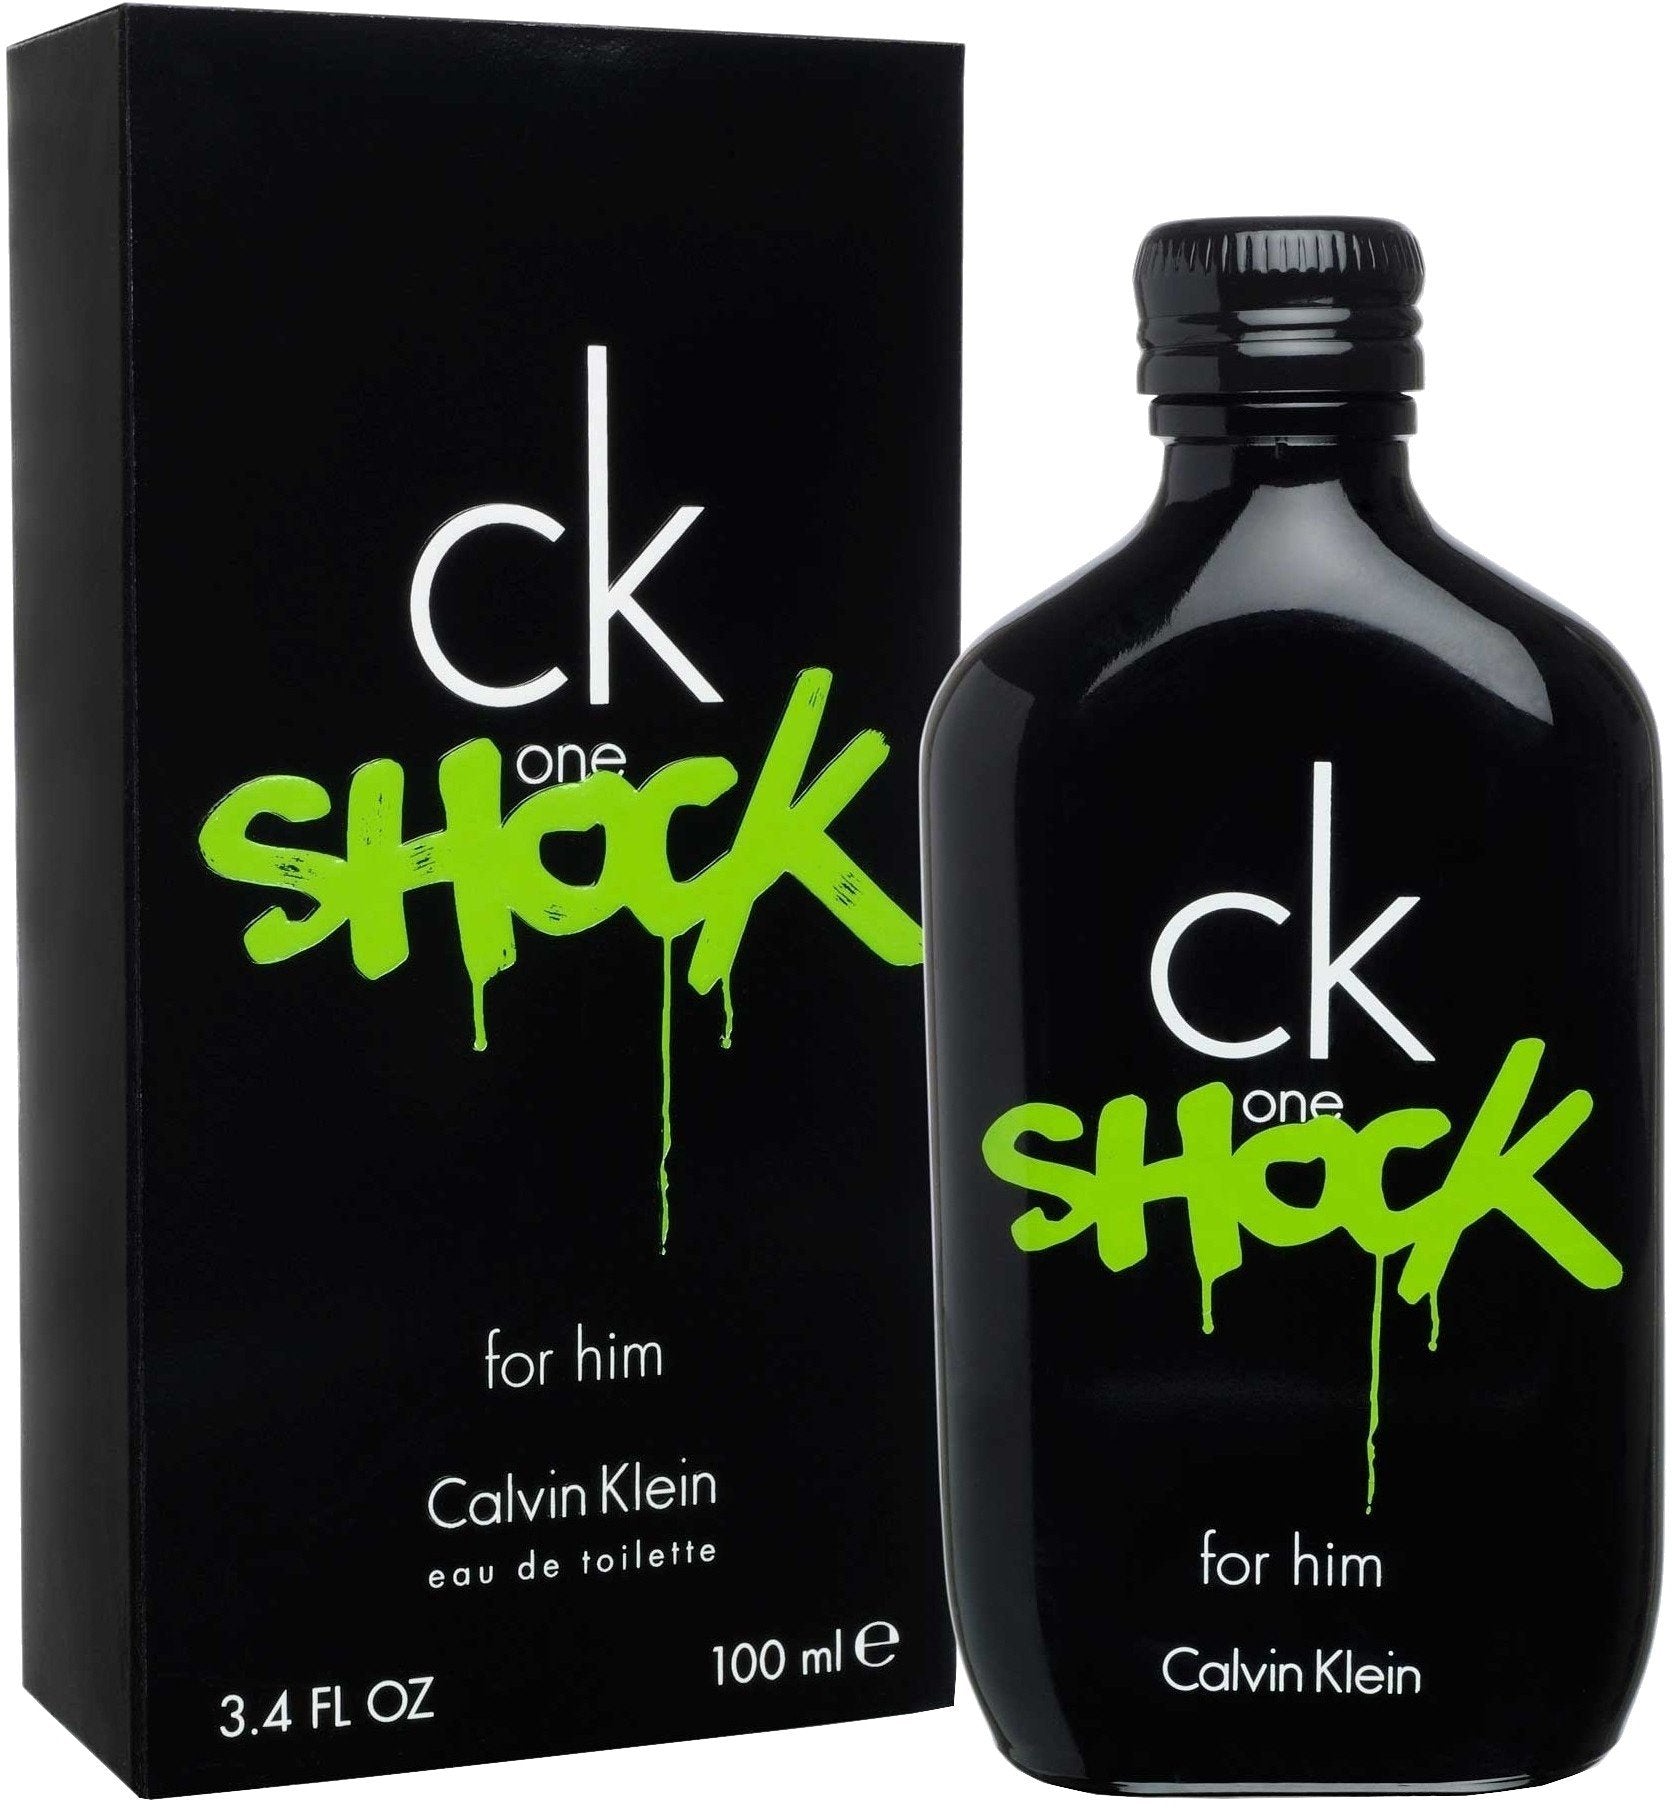 CALVIN KLEIN - CK One Shock para hombre / 100 ml Eau De Toilette Spray